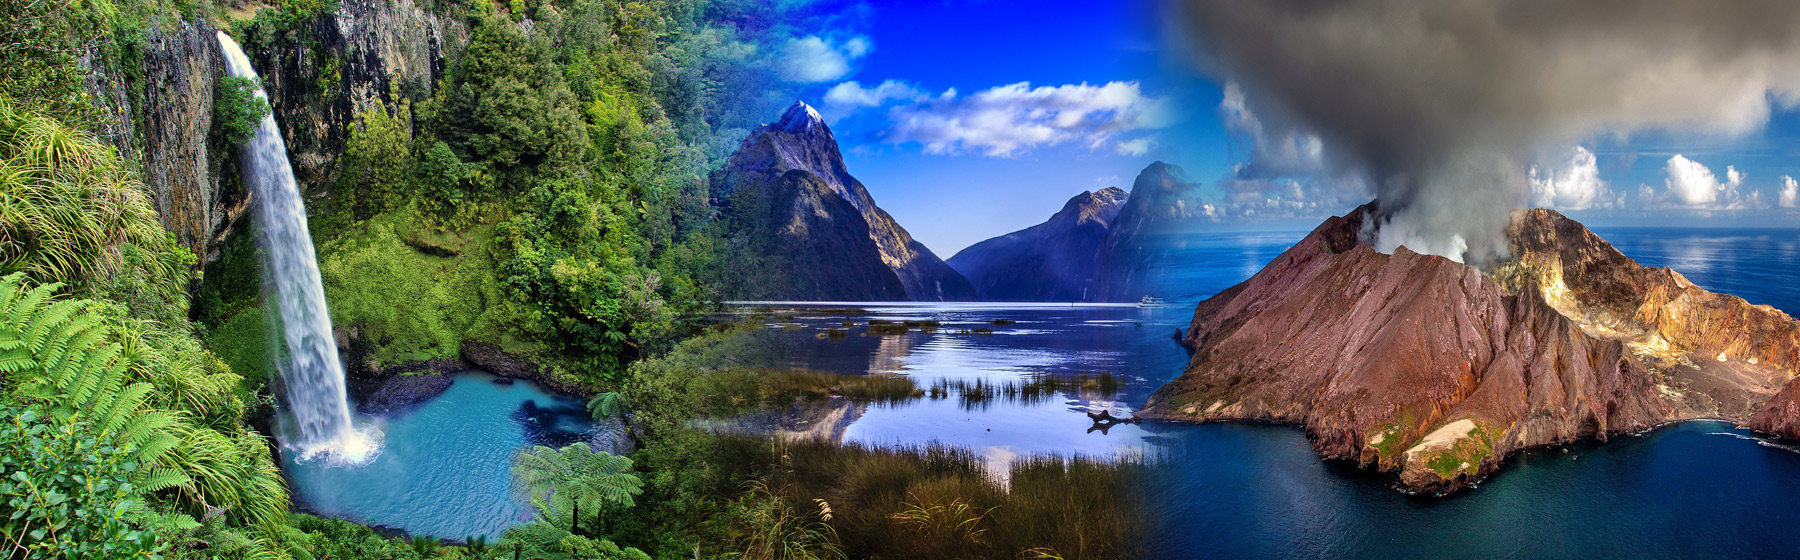 美丽的新西兰风景